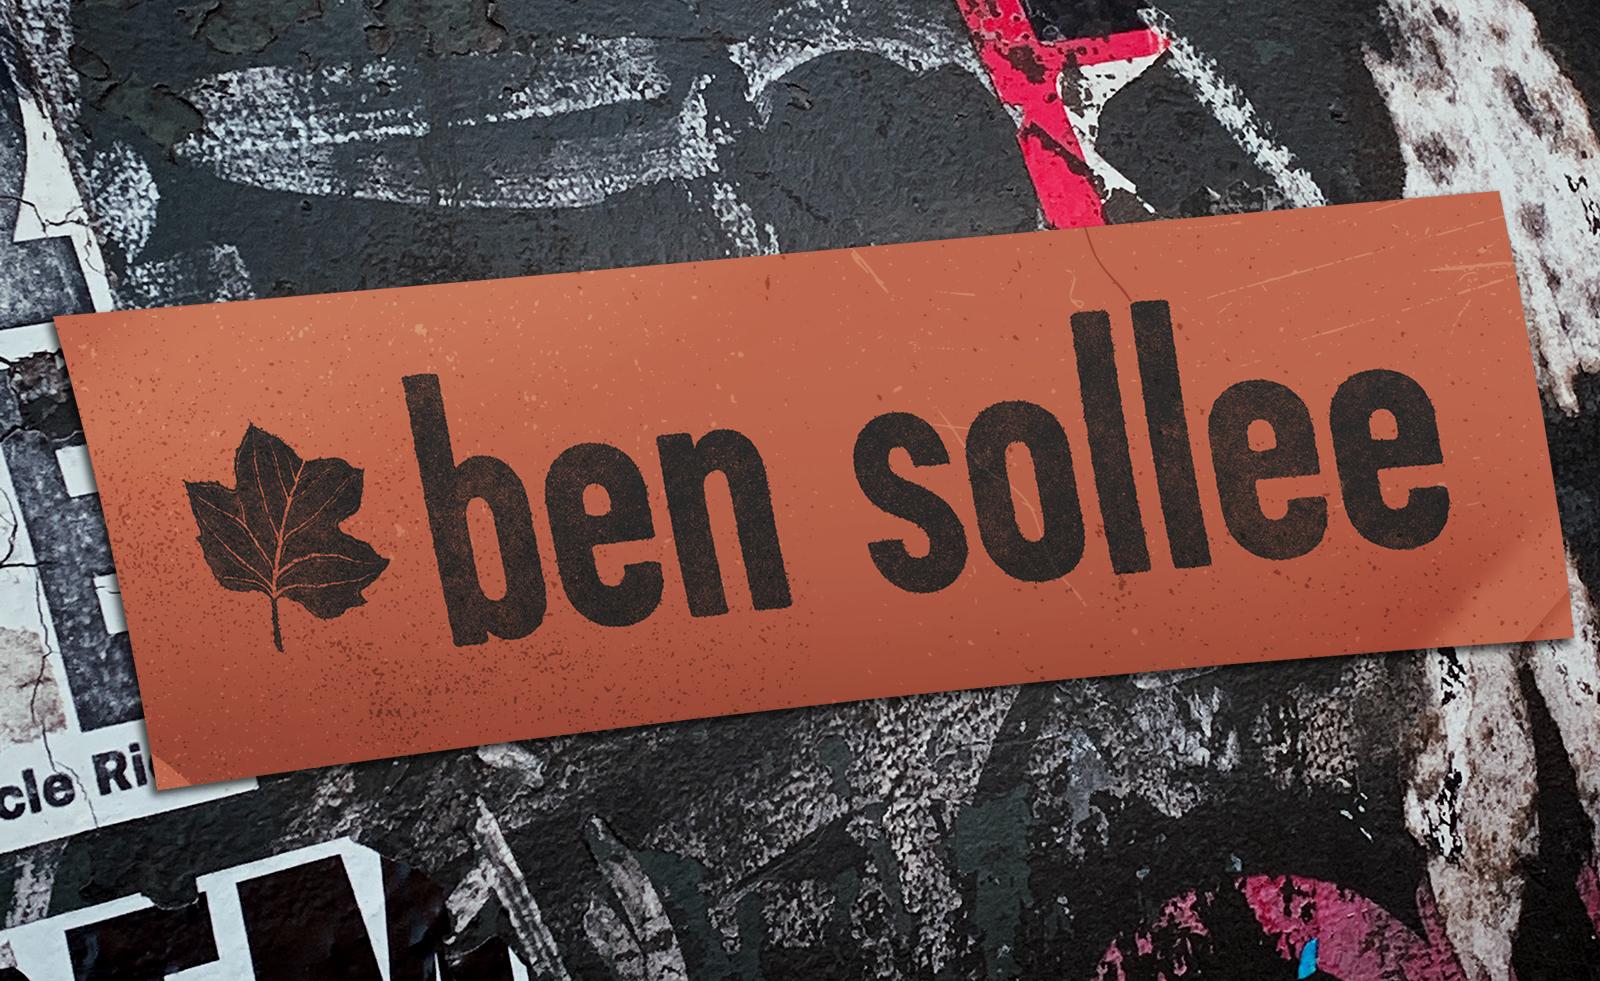 "Ben Sollee" printed in black on orange paper.